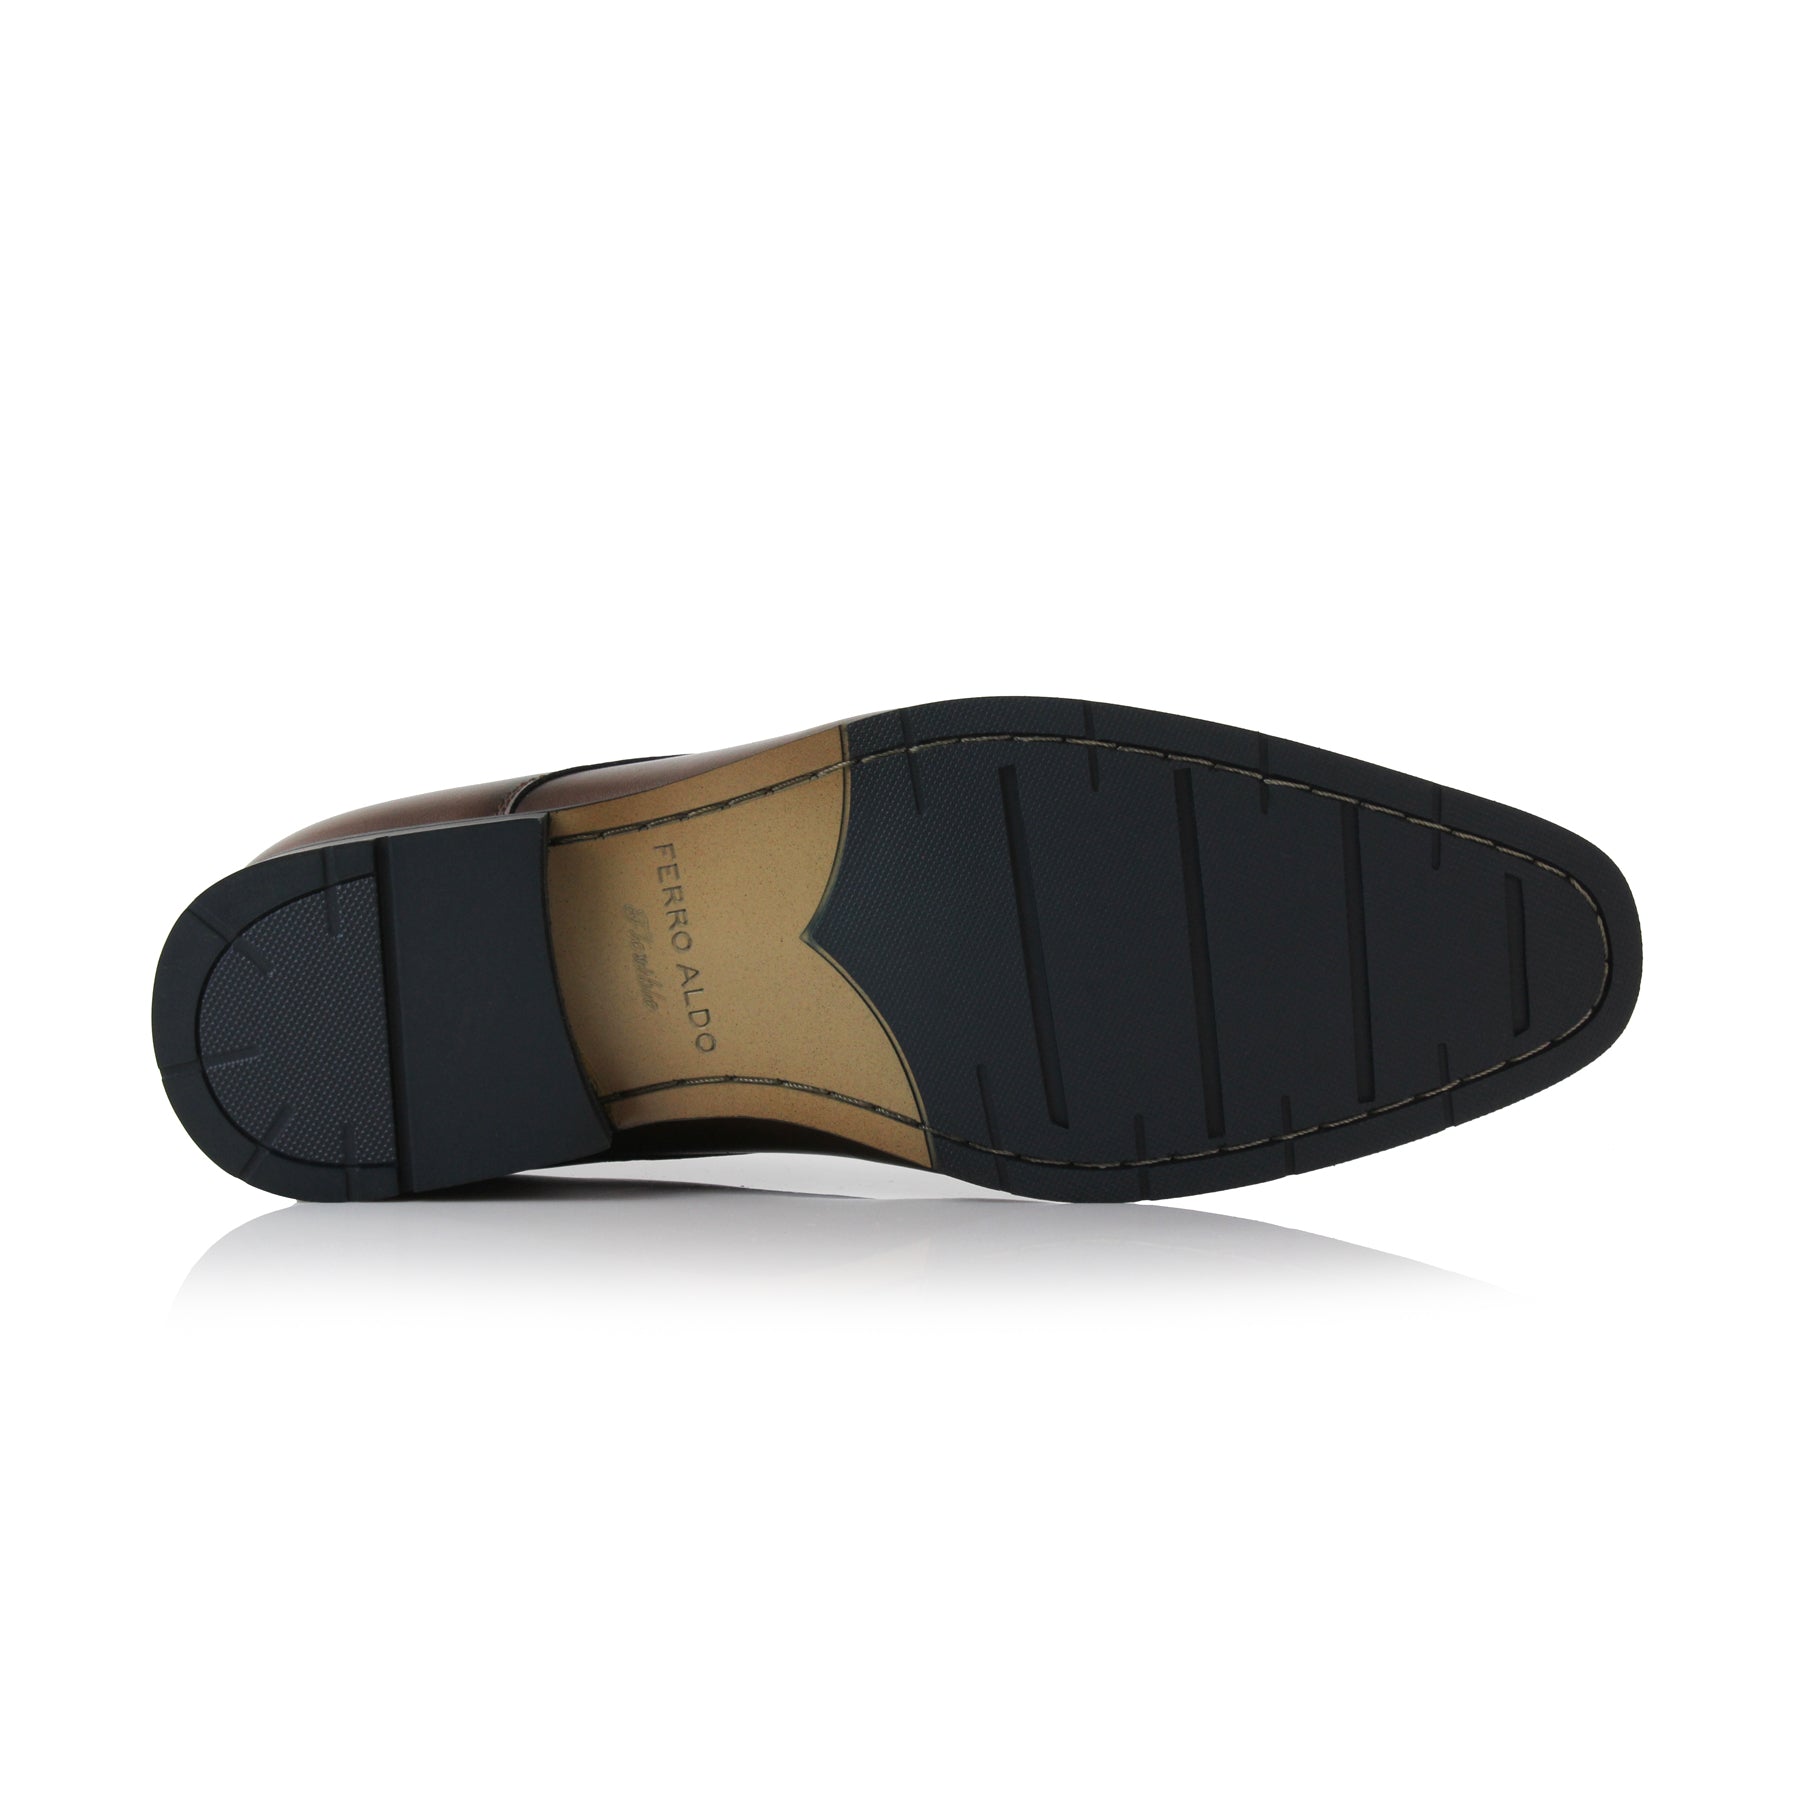 Plain Toe Derby Shoes | Alvin by Ferro Aldo | Conal Footwear | Bottom Sole Angle View